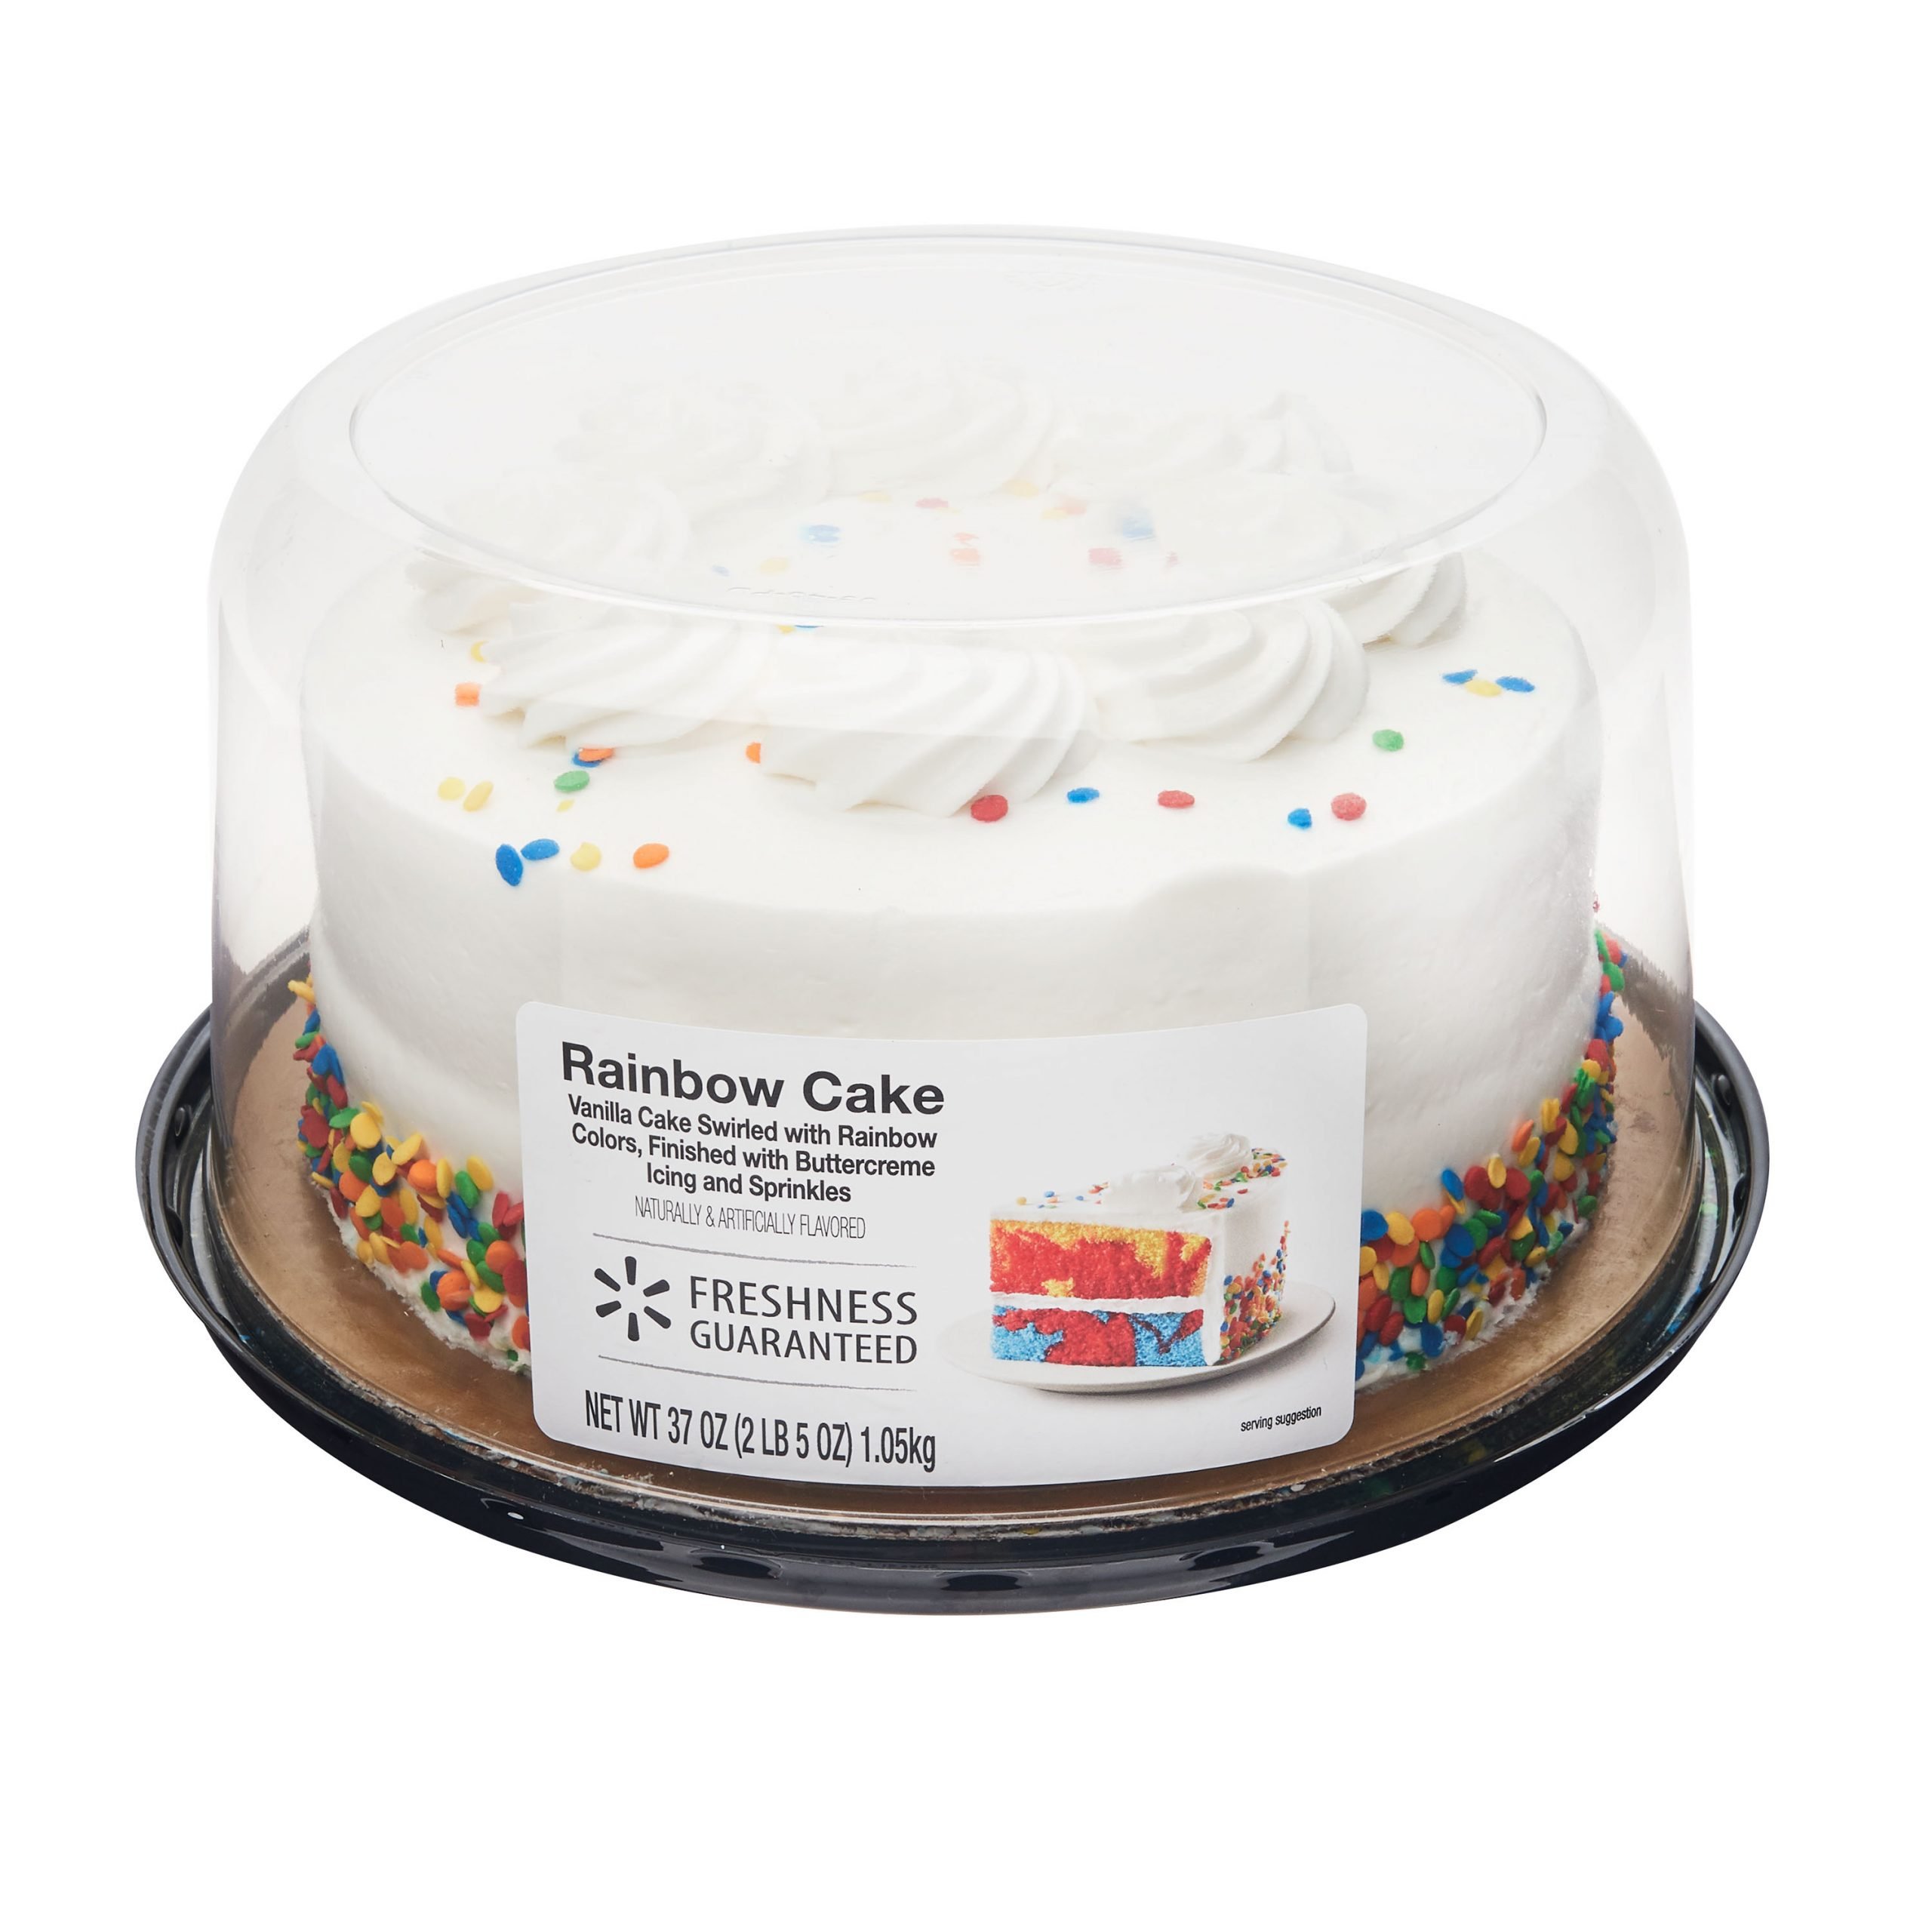 Freshness Guaranteed 7"  Rainbow Cake